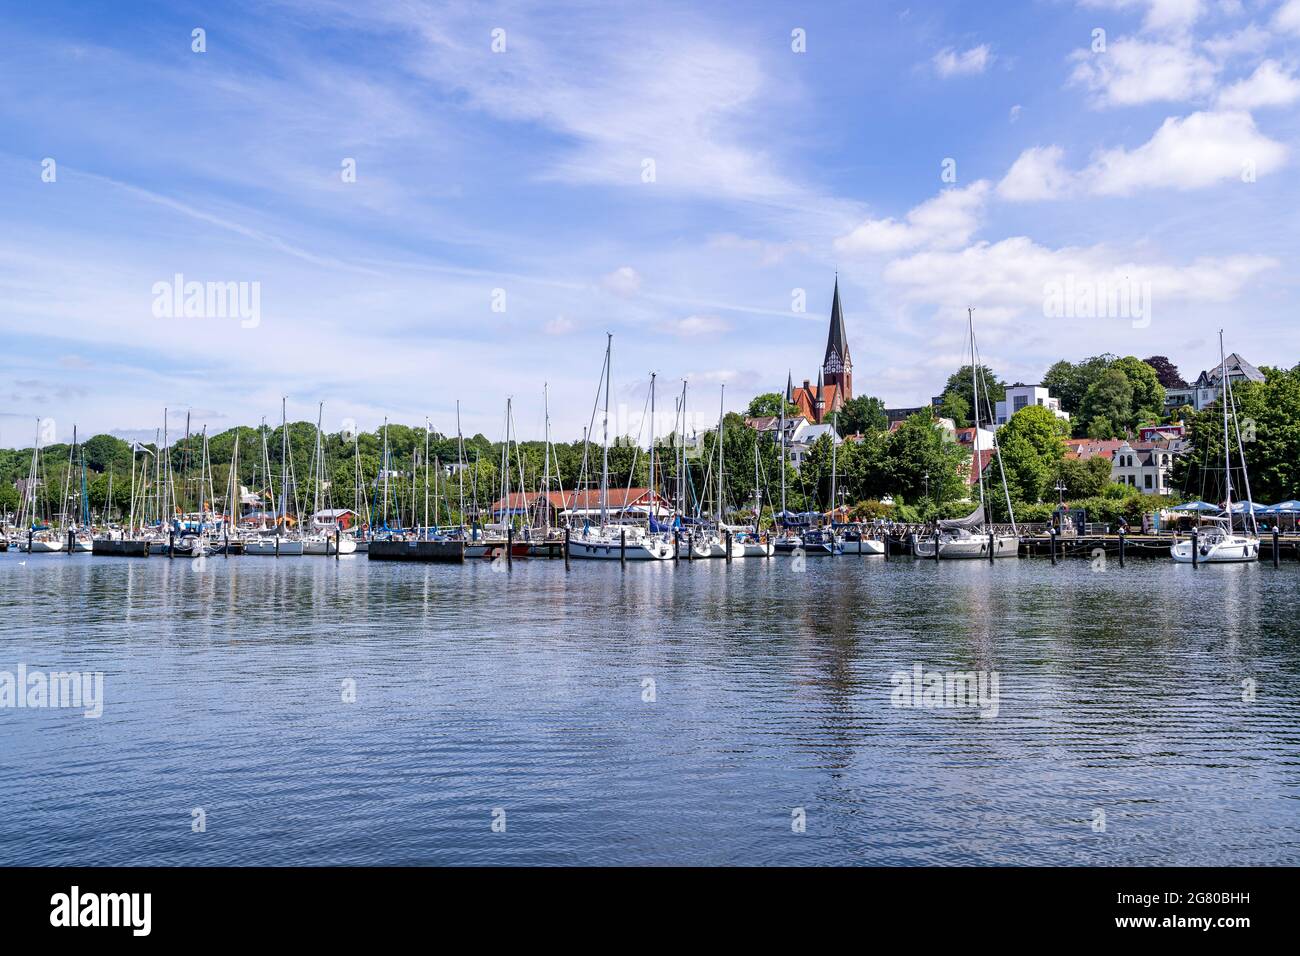 Hafen von Flensburg, Deutschland - Ostufer Stockfoto